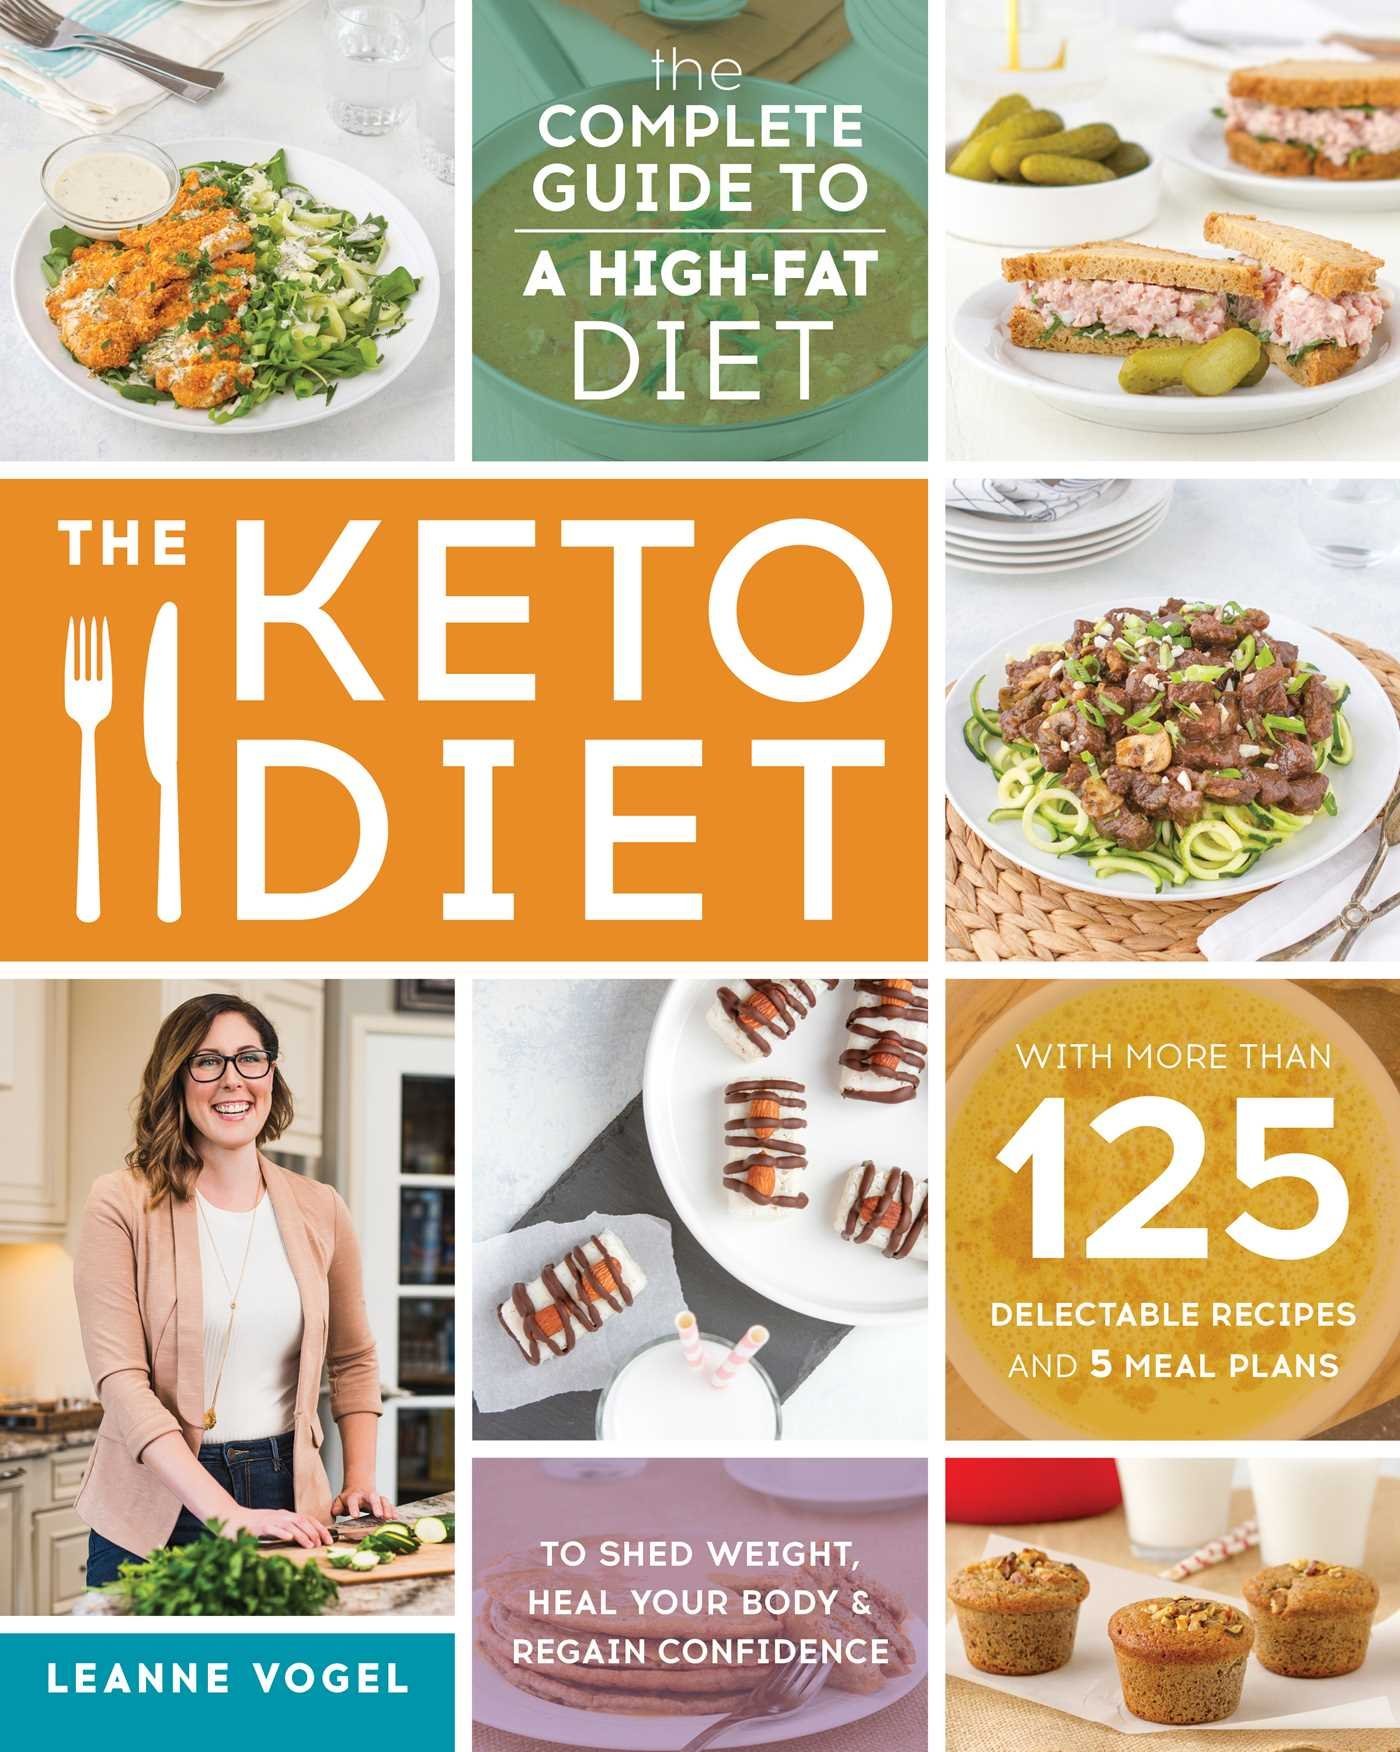 NEW Keto Cookbooks For Your Bookshelf - inspiration for ...